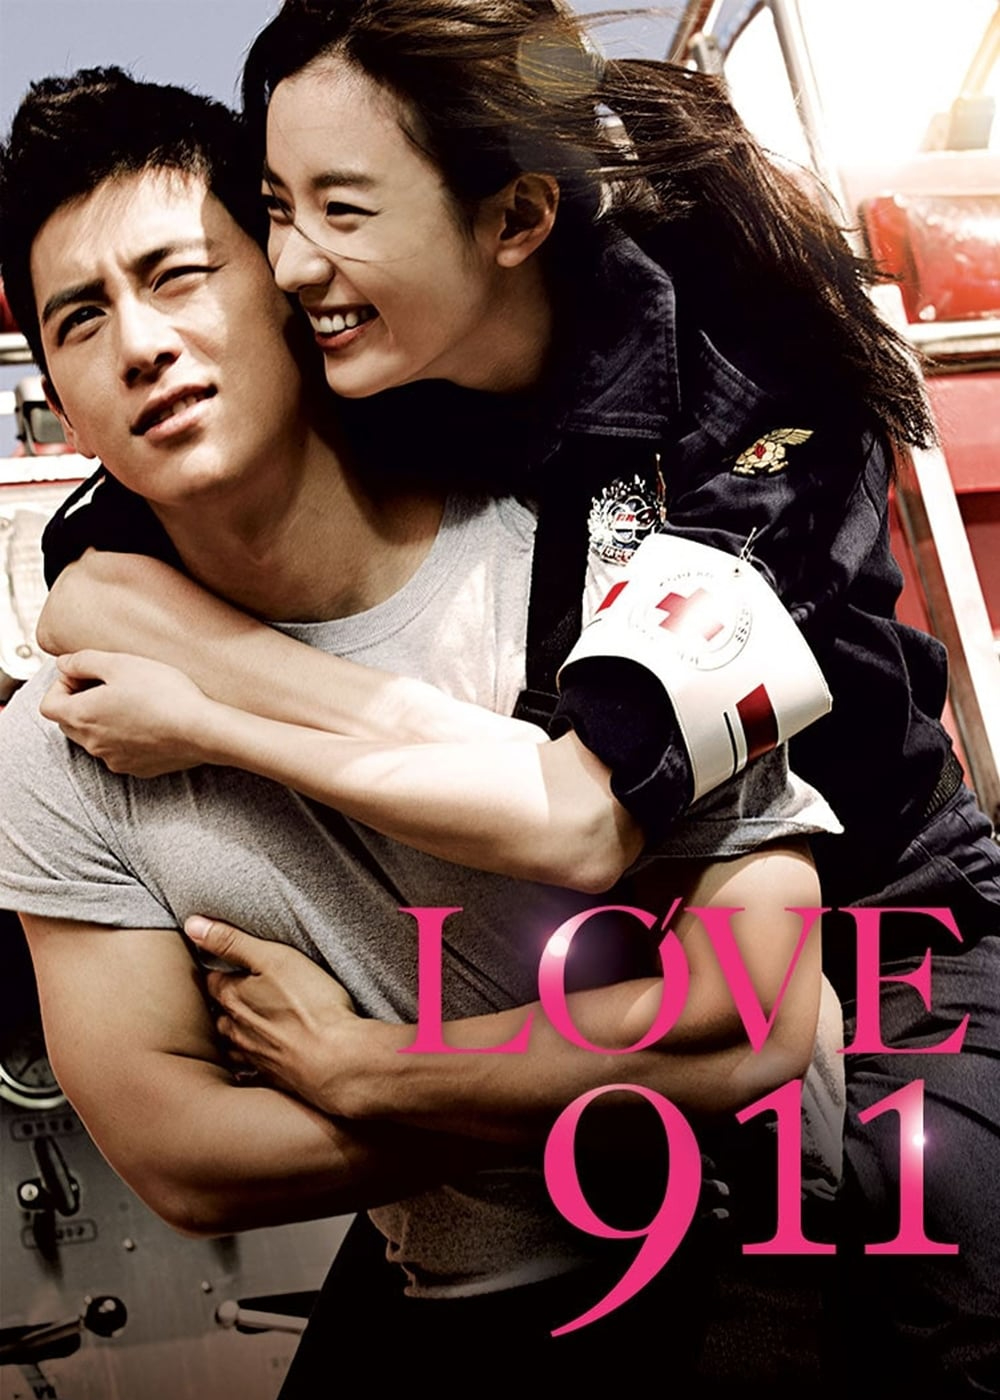 Poster Phim Yêu Khân Câp (Love 911)